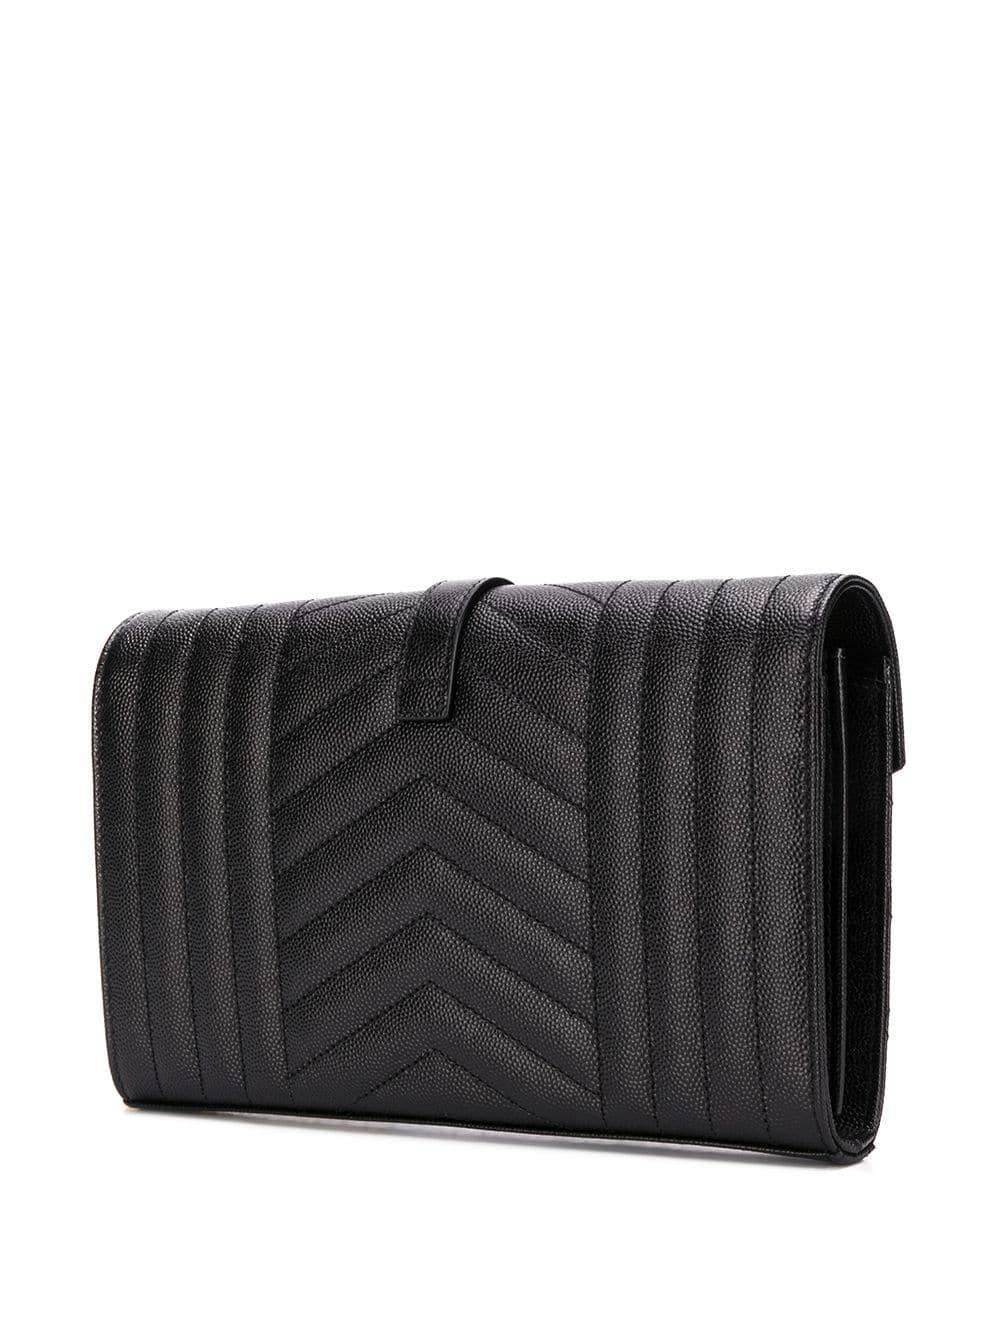 SAINT LAURENT Black Quilted Pouch Handbag for Women